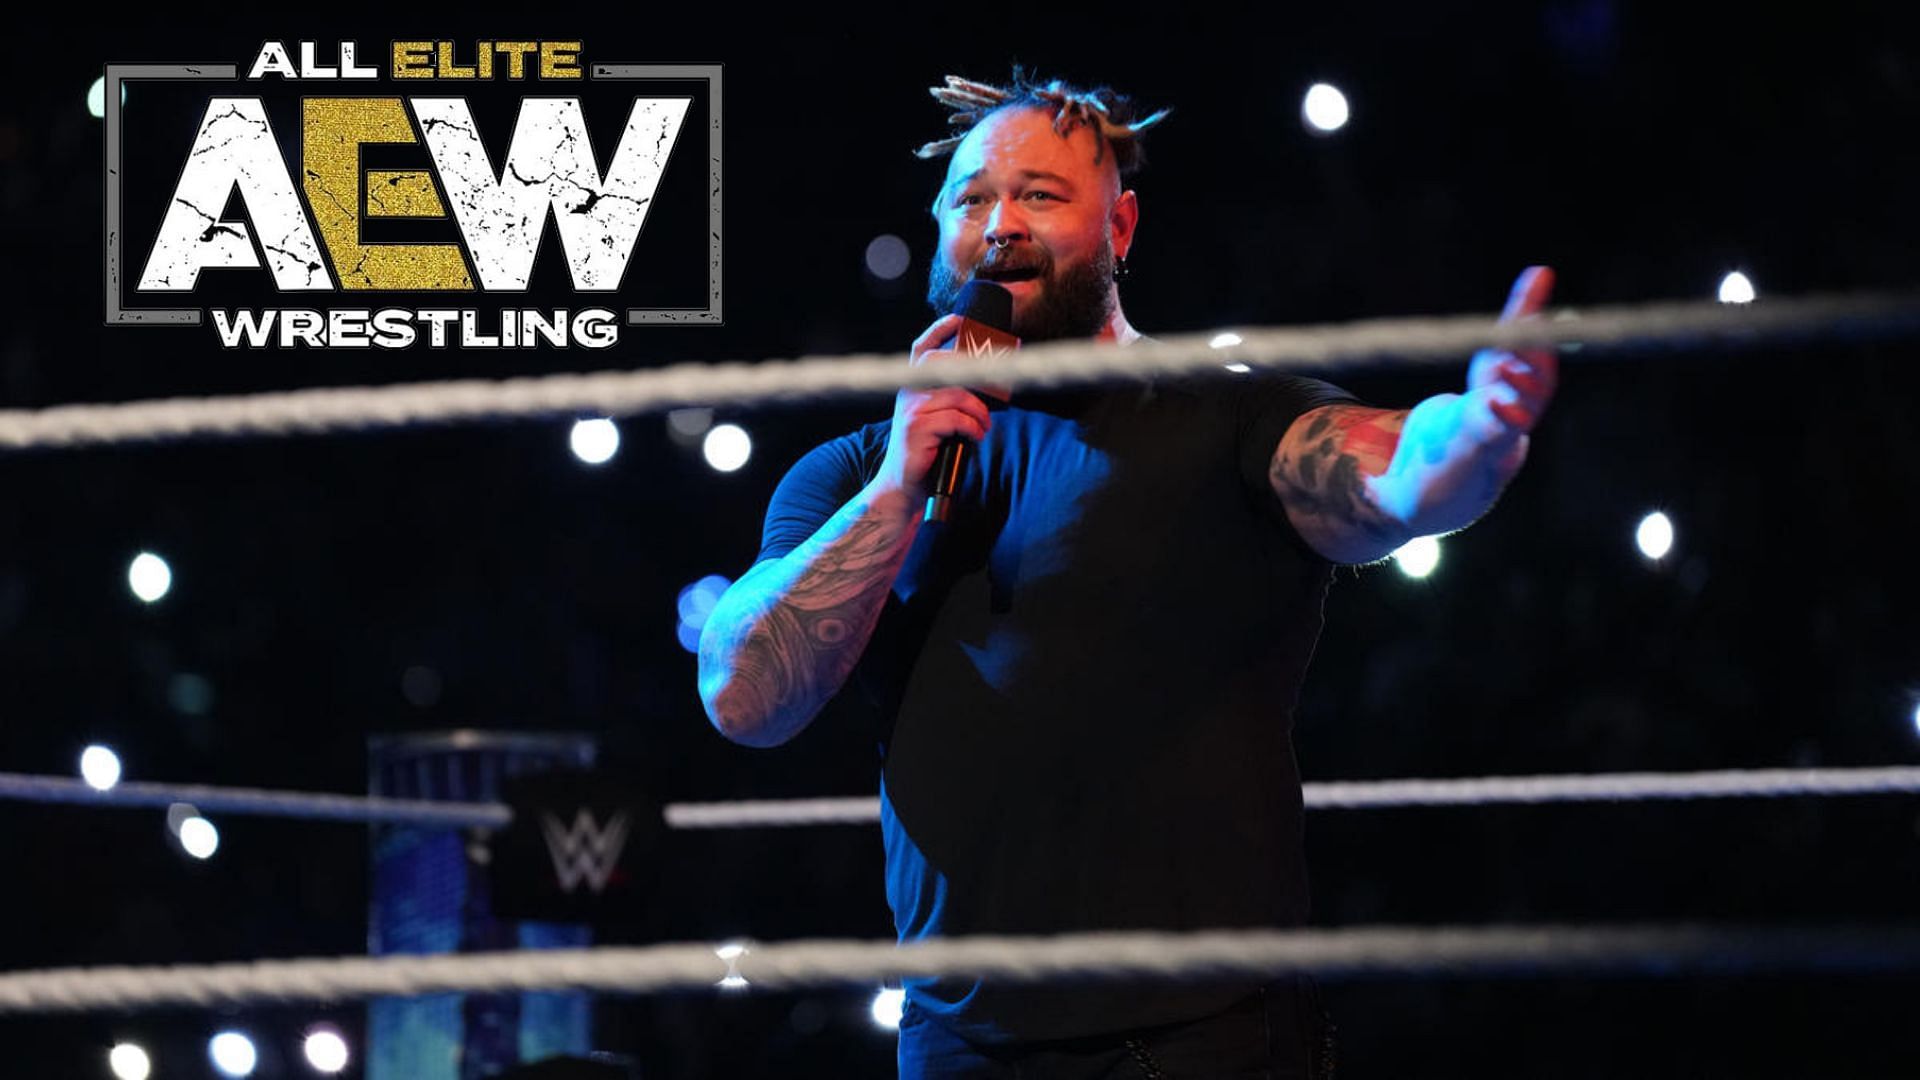 Bray Wyatt cut an emotional promo upon is return